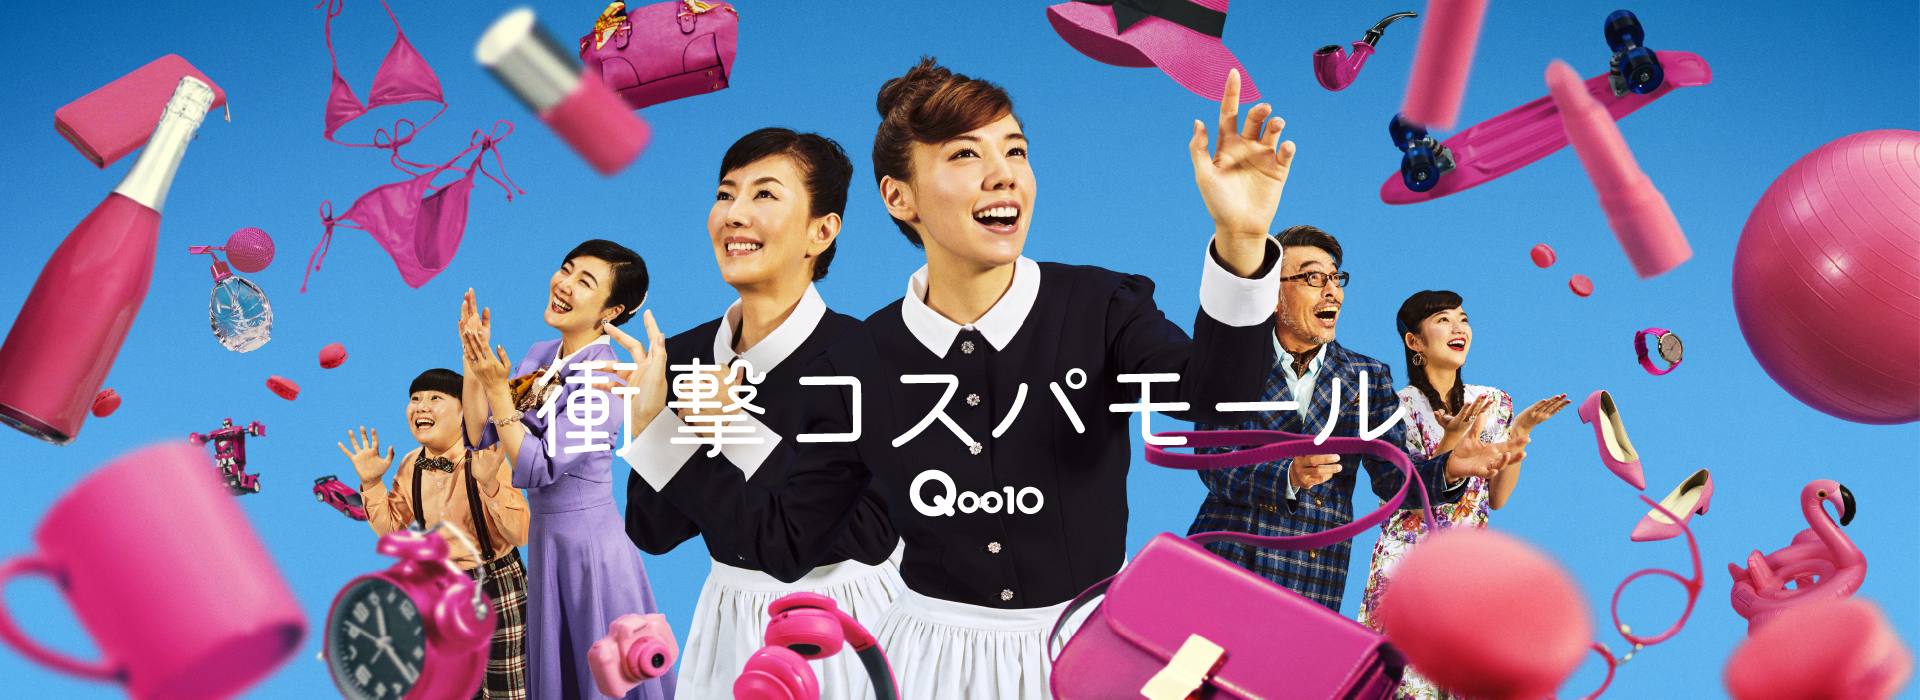 家政婦 仲里依紗 が お父様の悩みに チェックメイト Qoo10 新tvcm放映開始 Ebay Japan合同会社のプレスリリース